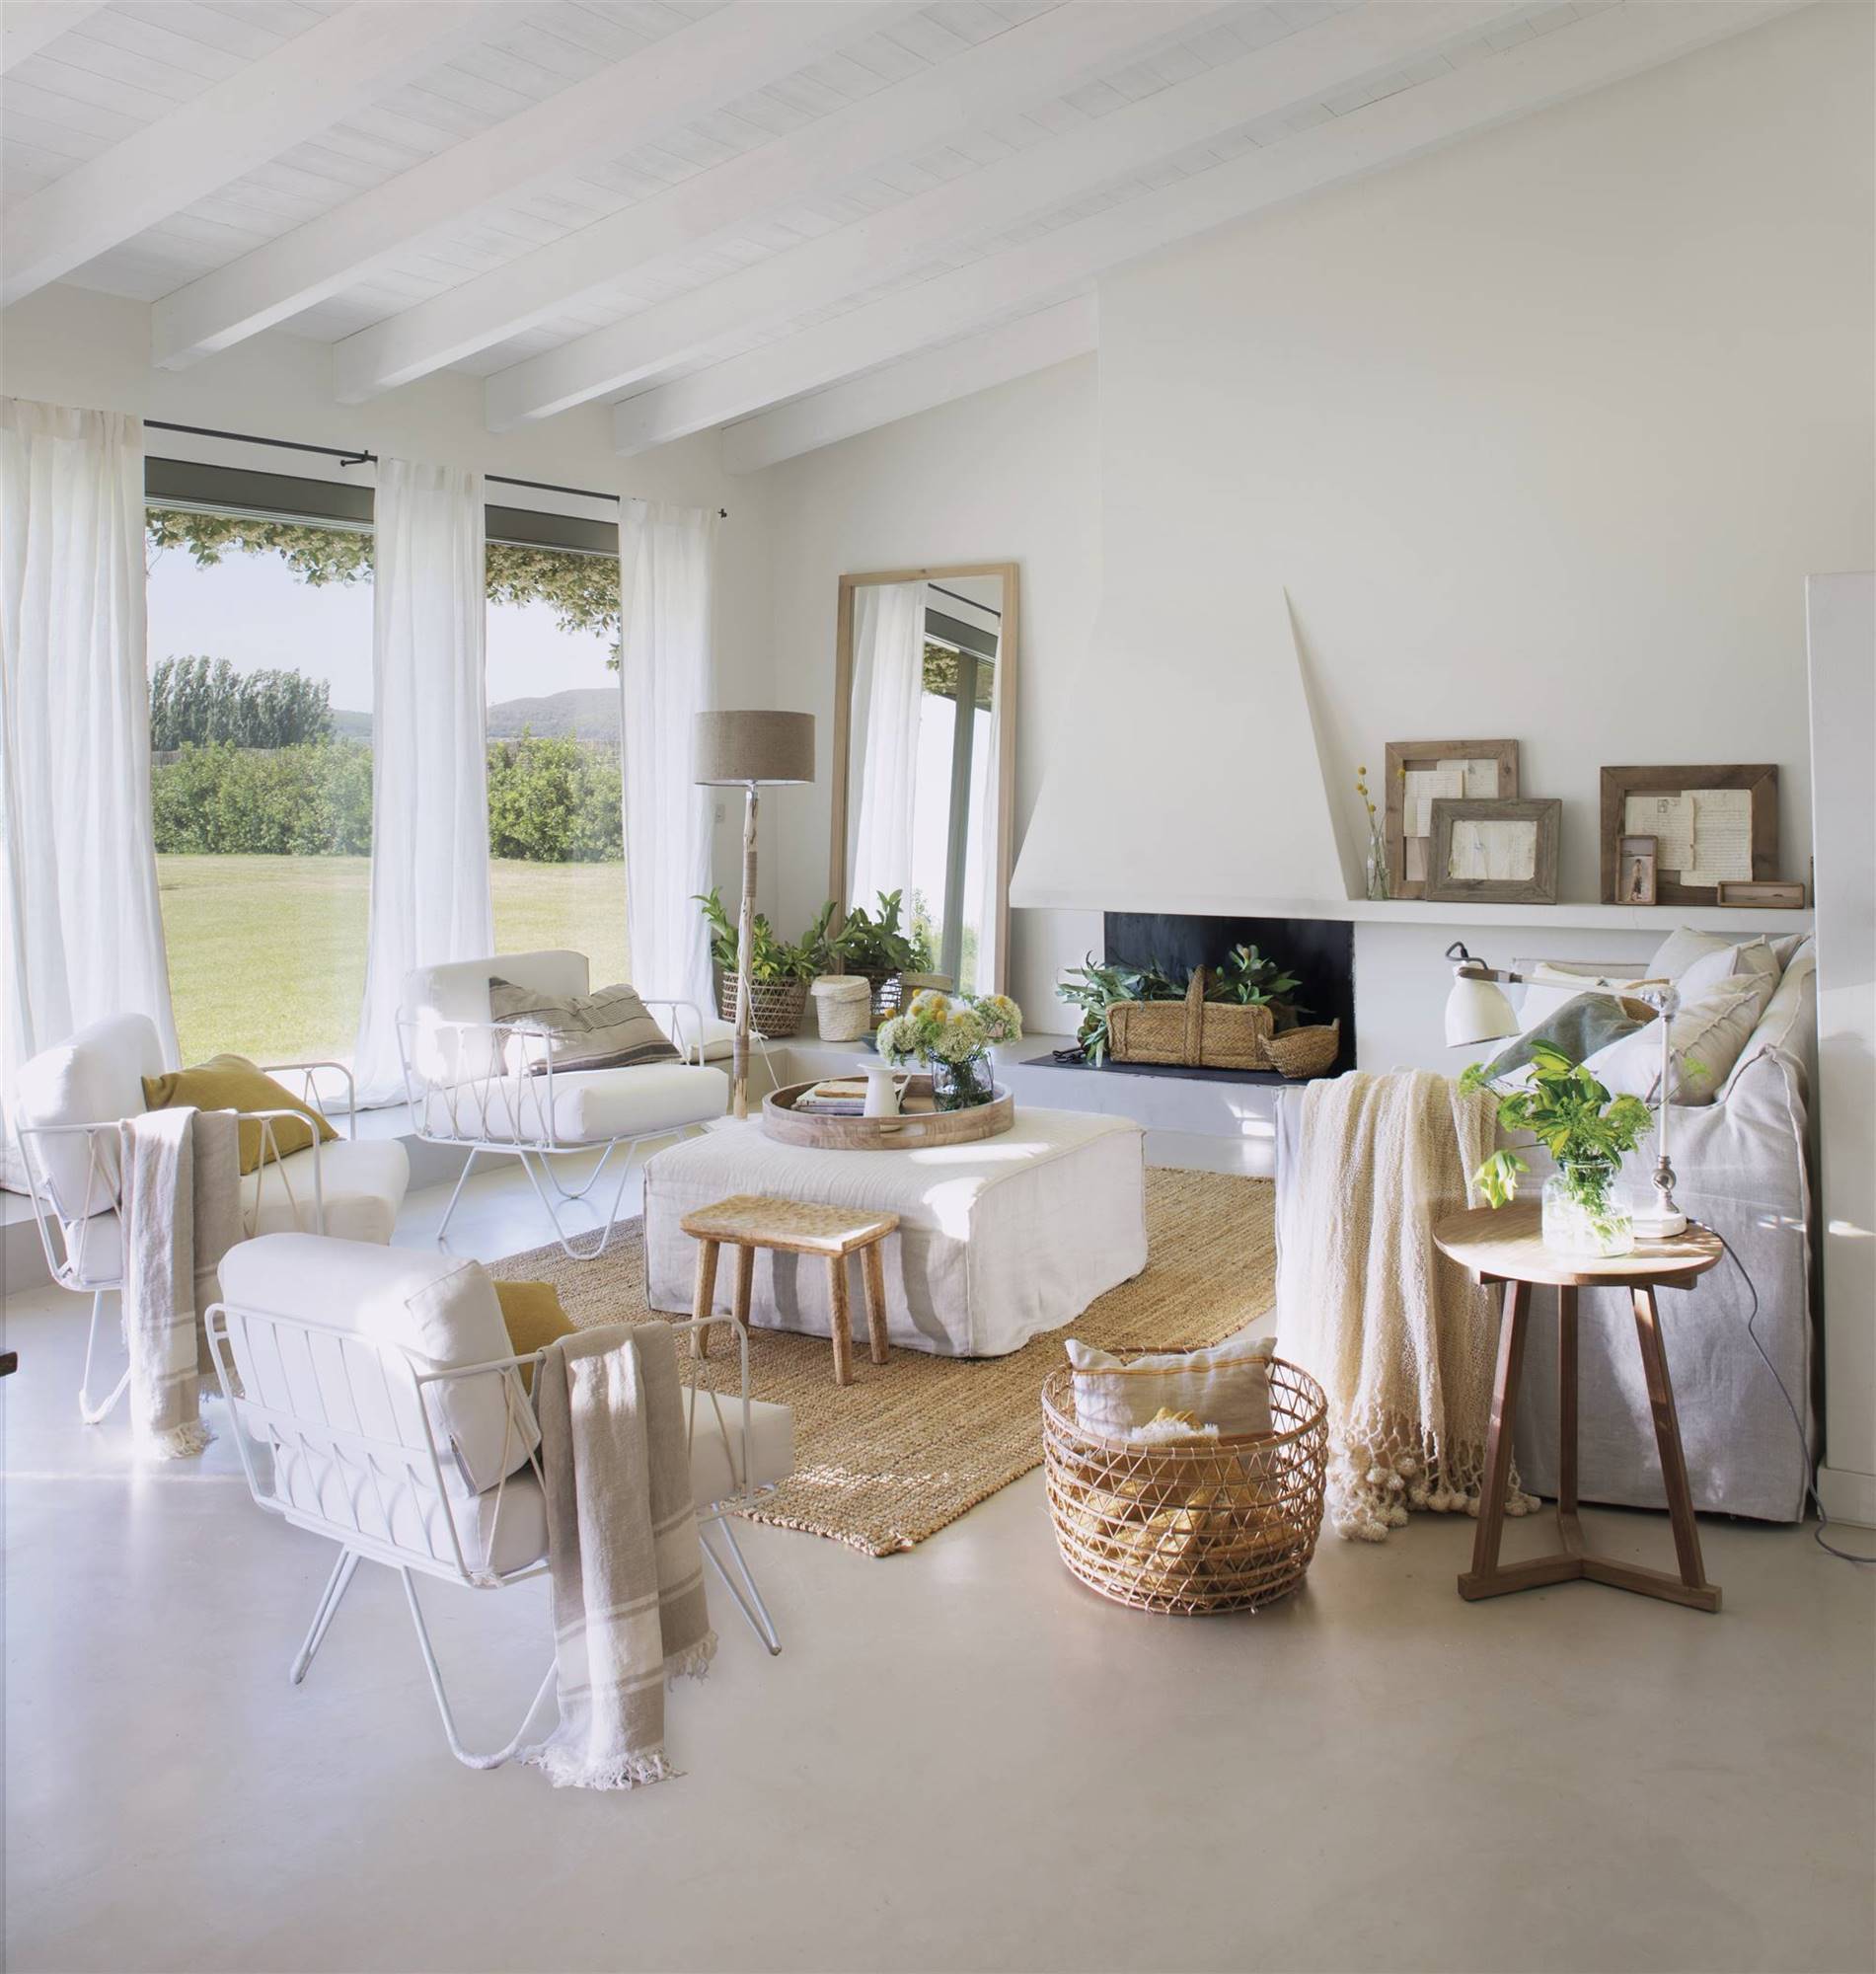 Salón luminoso con mobiliario y chimenea en blanco. 